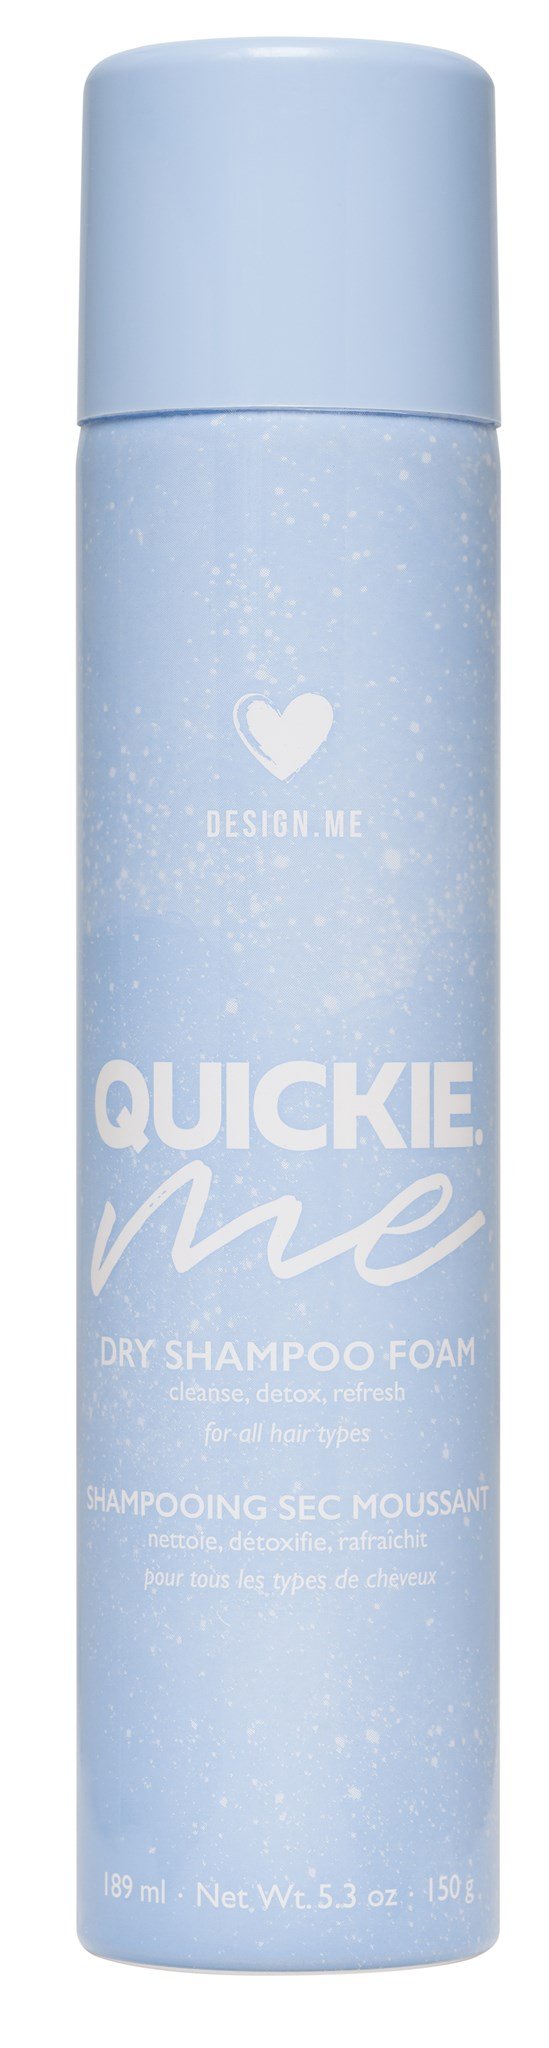 DesignMe Quickie Me Dry Shampoo Foam 189ml